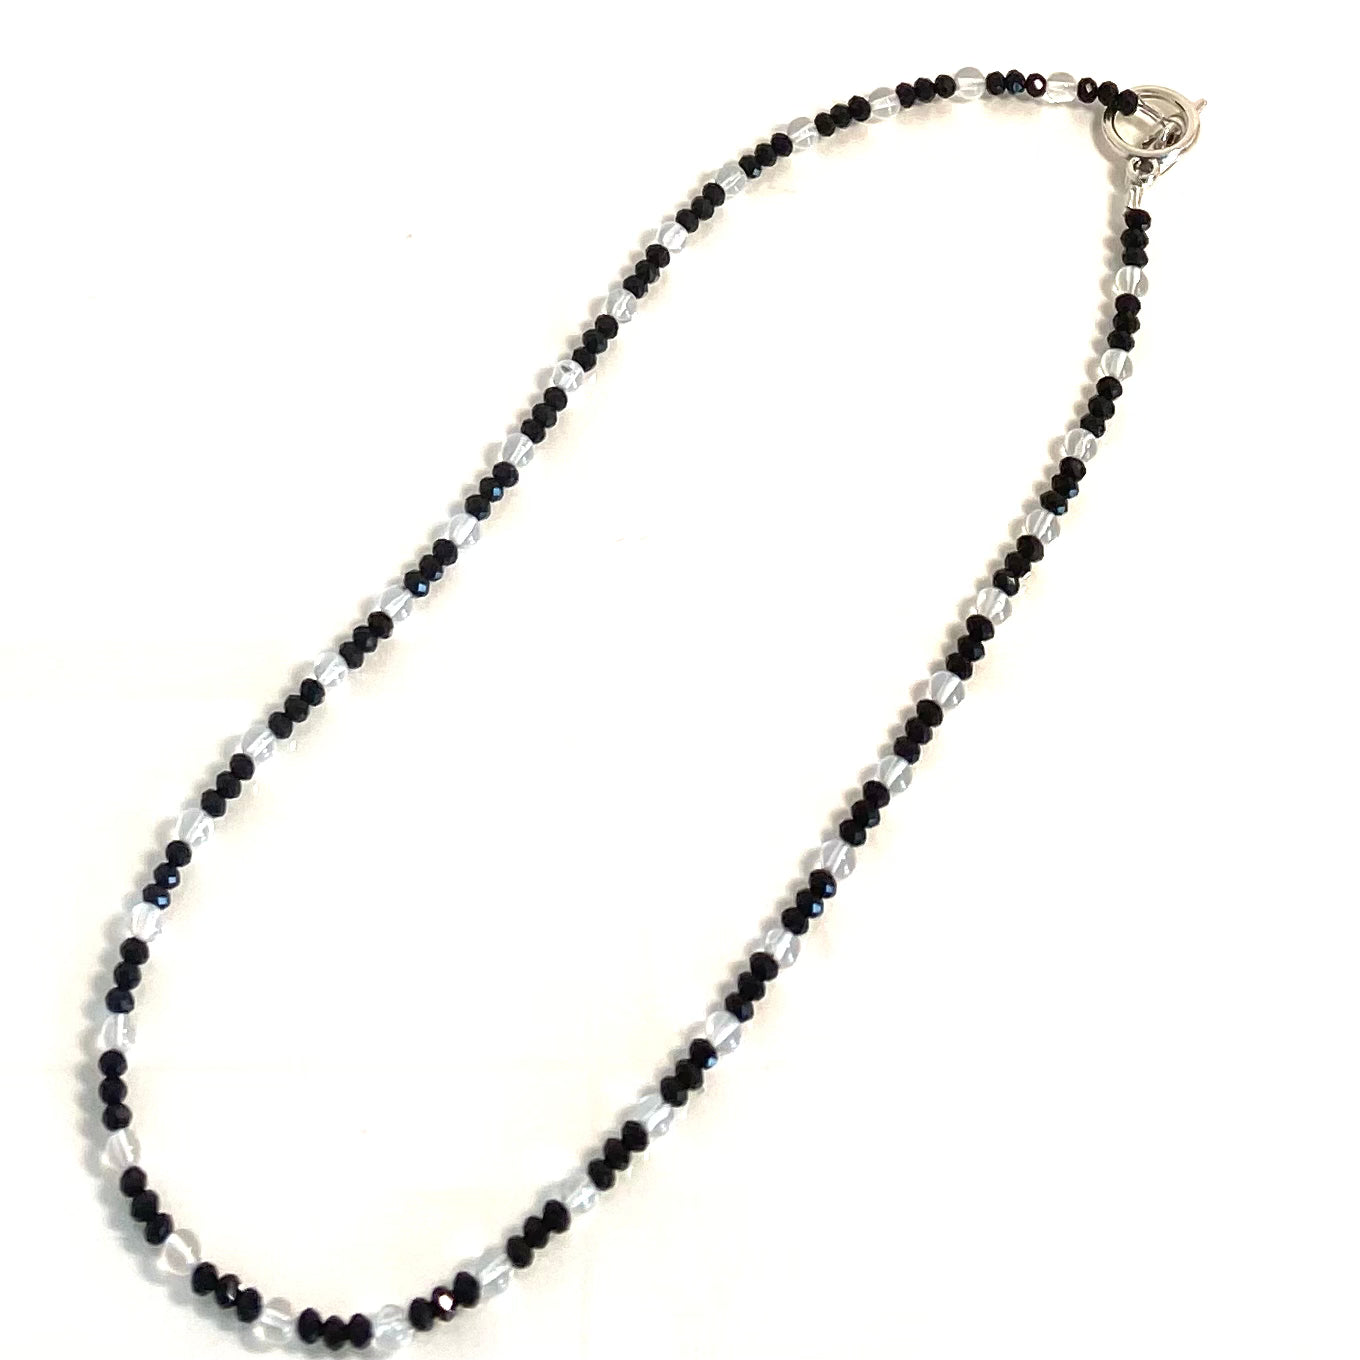 Onyx and Quartz Necklace